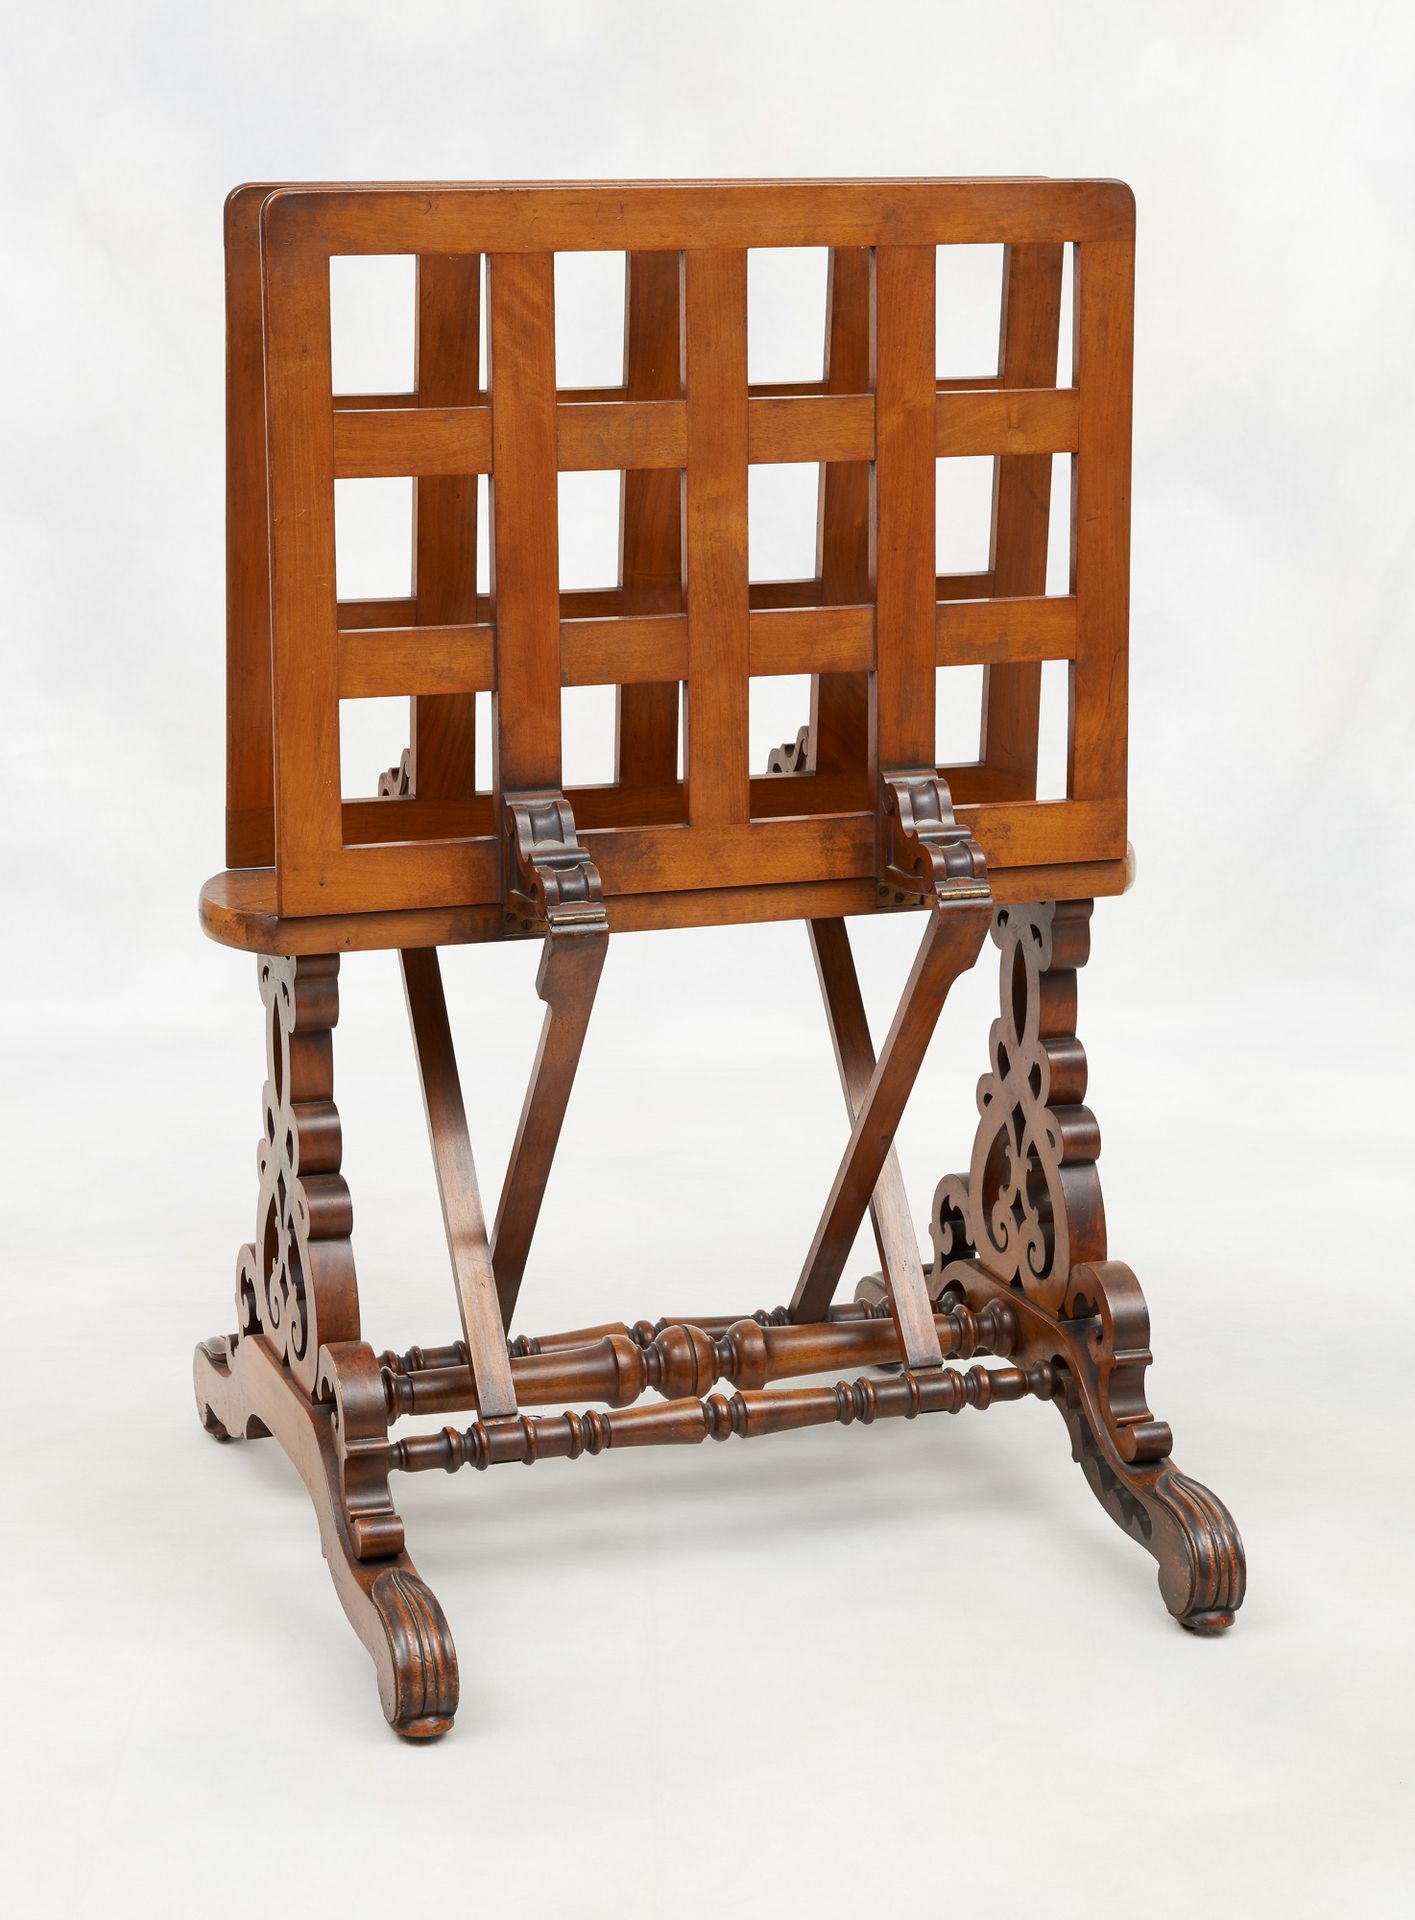 Travail du 19e. Mueble: tarjetero de latón y madera.

Tamaño: H.: 112 cm.